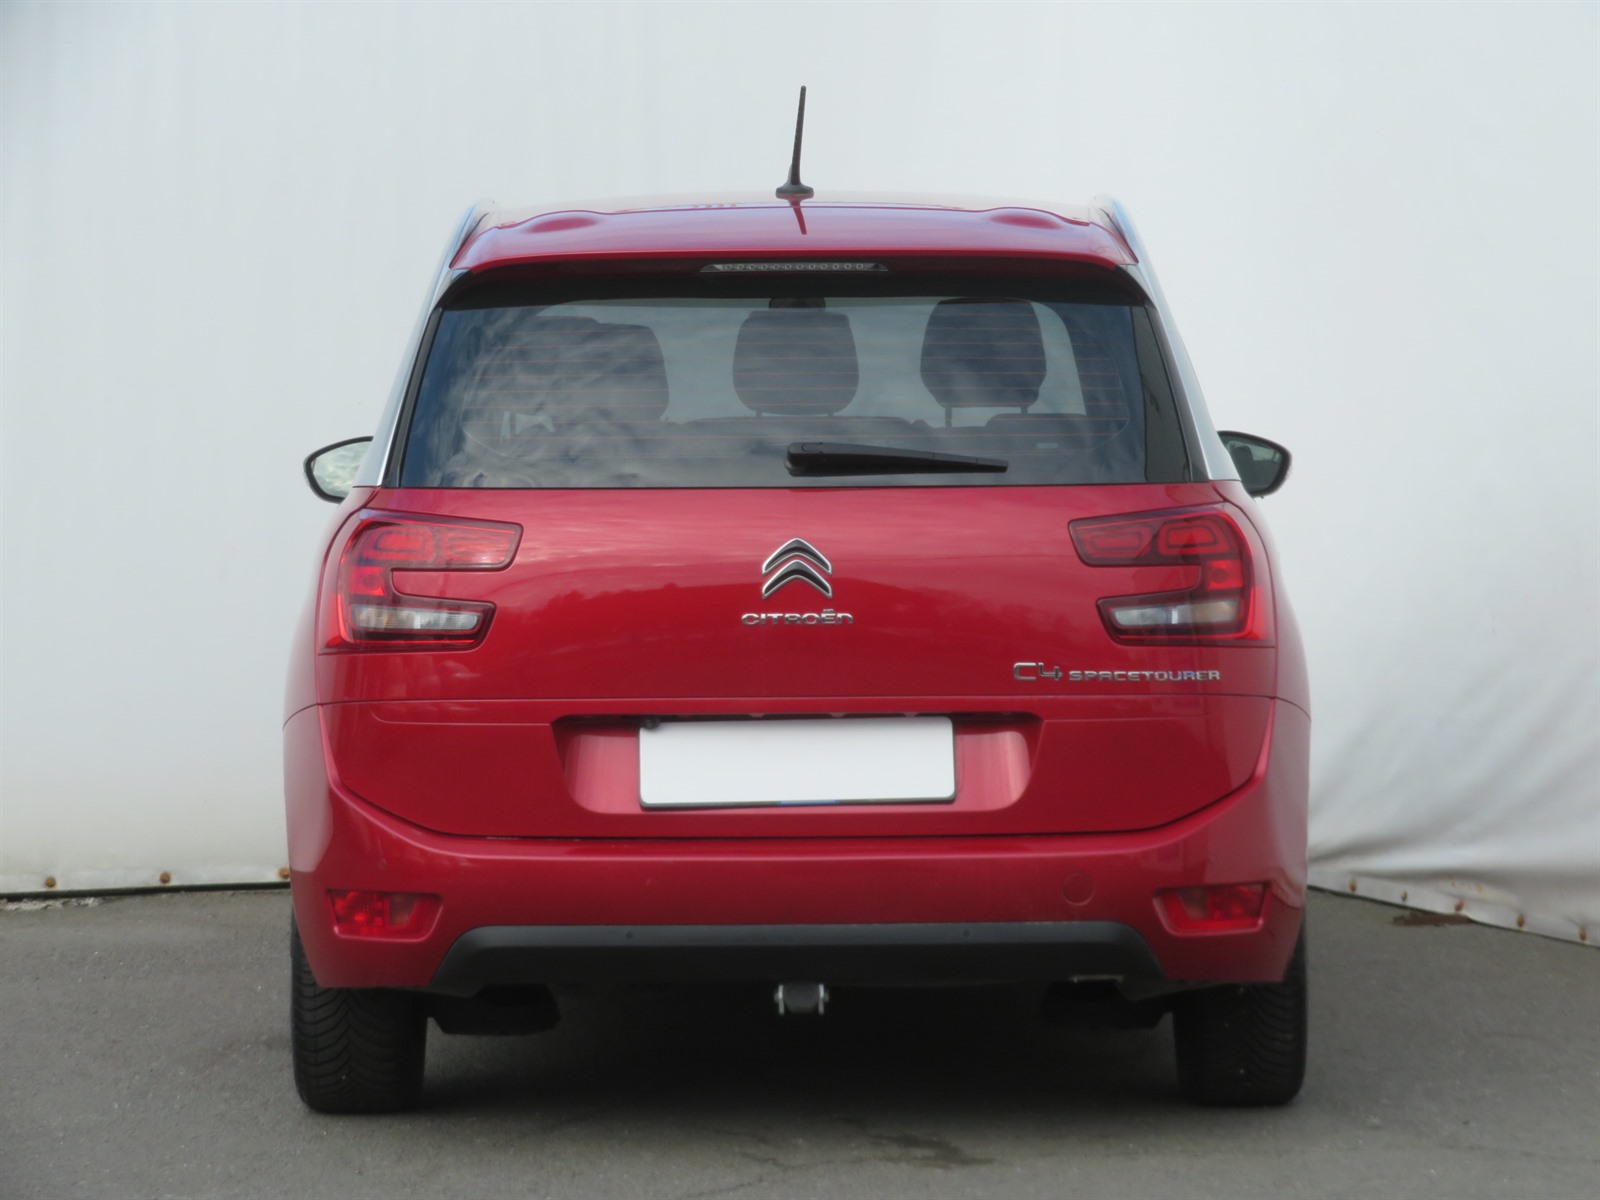 Citroën Ostatní, 2019 - pohled č. 6